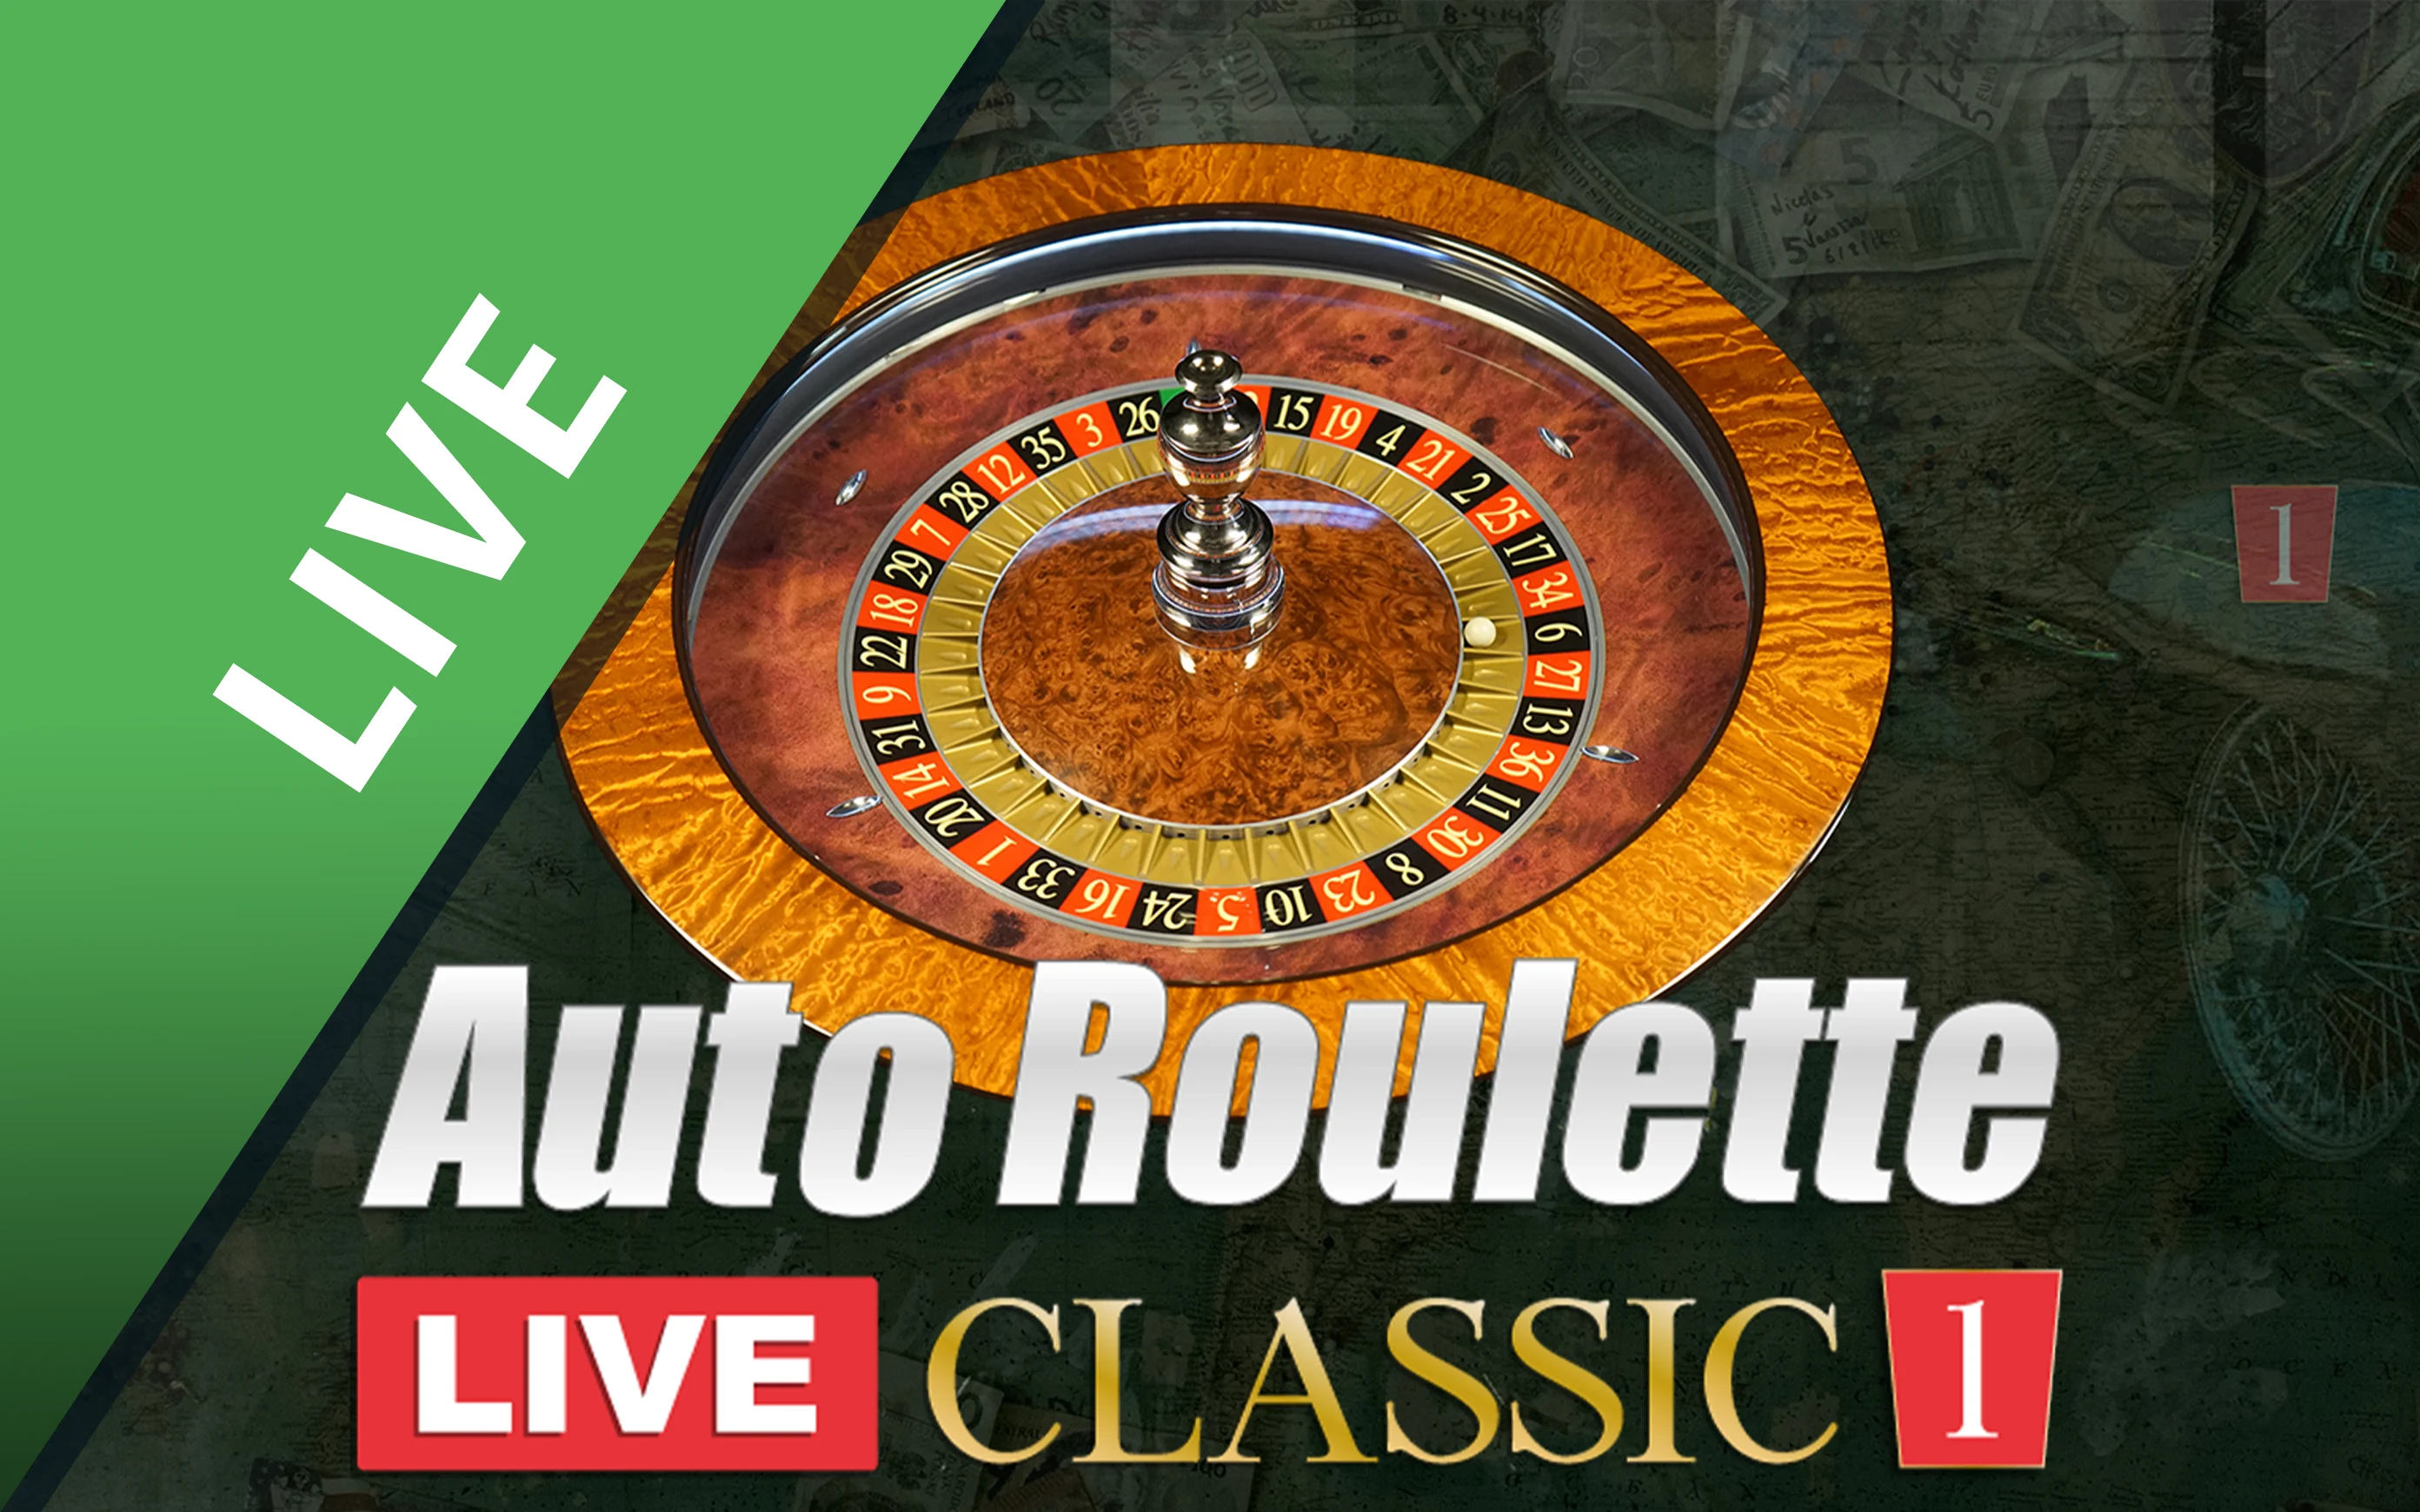 Грайте у Classic Roulette 1 в онлайн-казино Starcasino.be